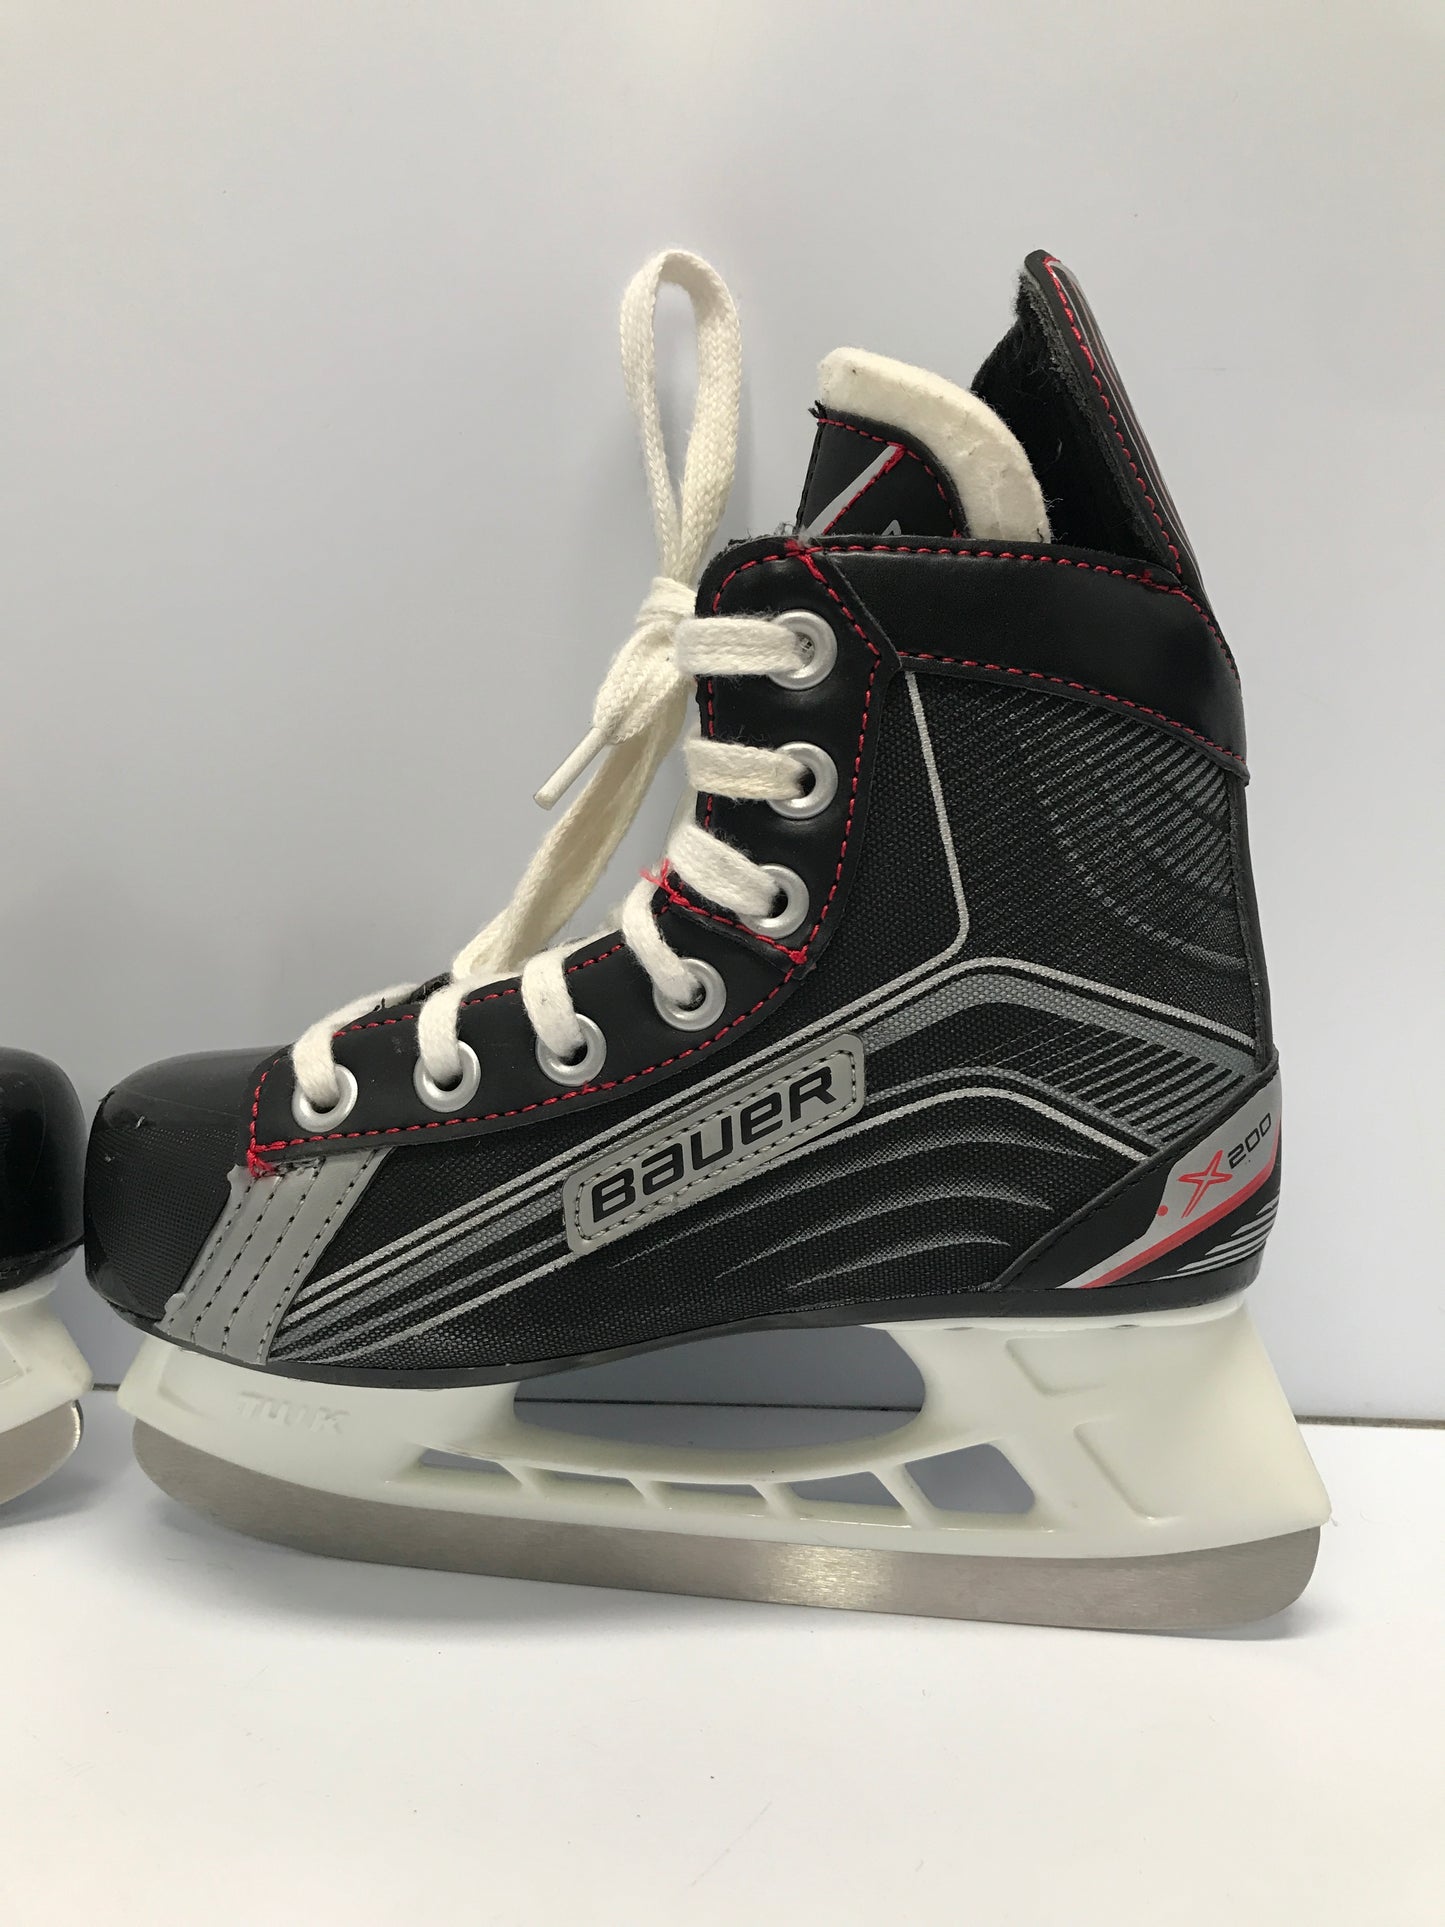 Hockey Skates Child Size 1 Shoe Size 13 Bauer Vapor New